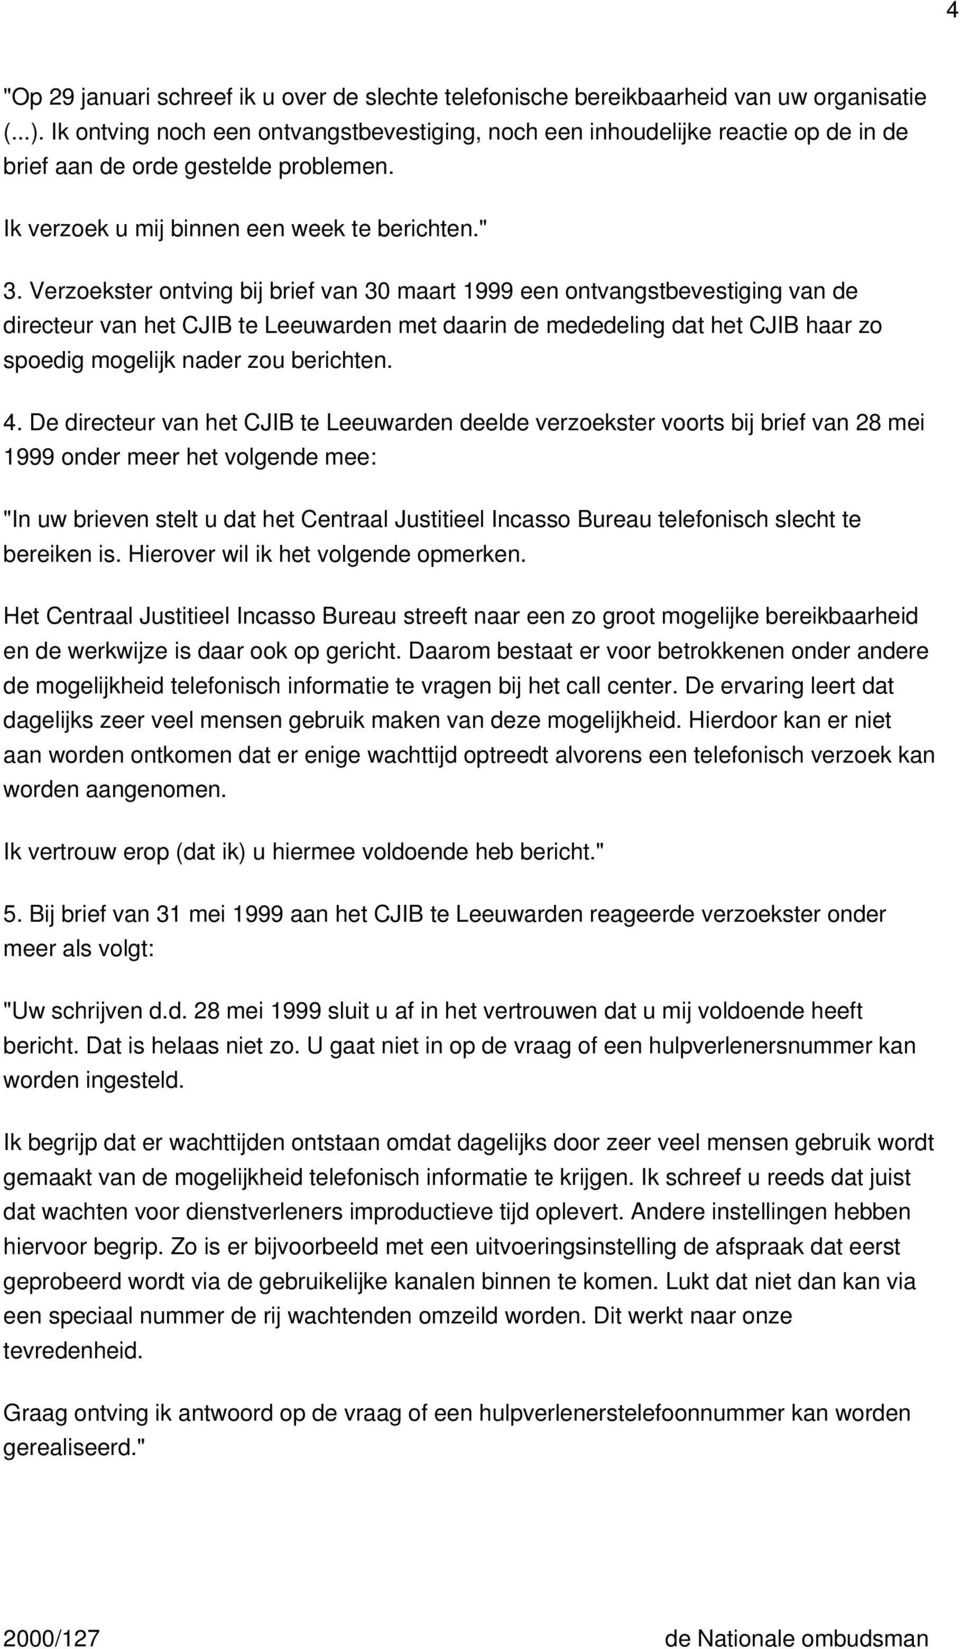 Verzoekster ontving bij brief van 30 maart 1999 een ontvangstbevestiging van de directeur van het CJIB te Leeuwarden met daarin de mededeling dat het CJIB haar zo spoedig mogelijk nader zou berichten.